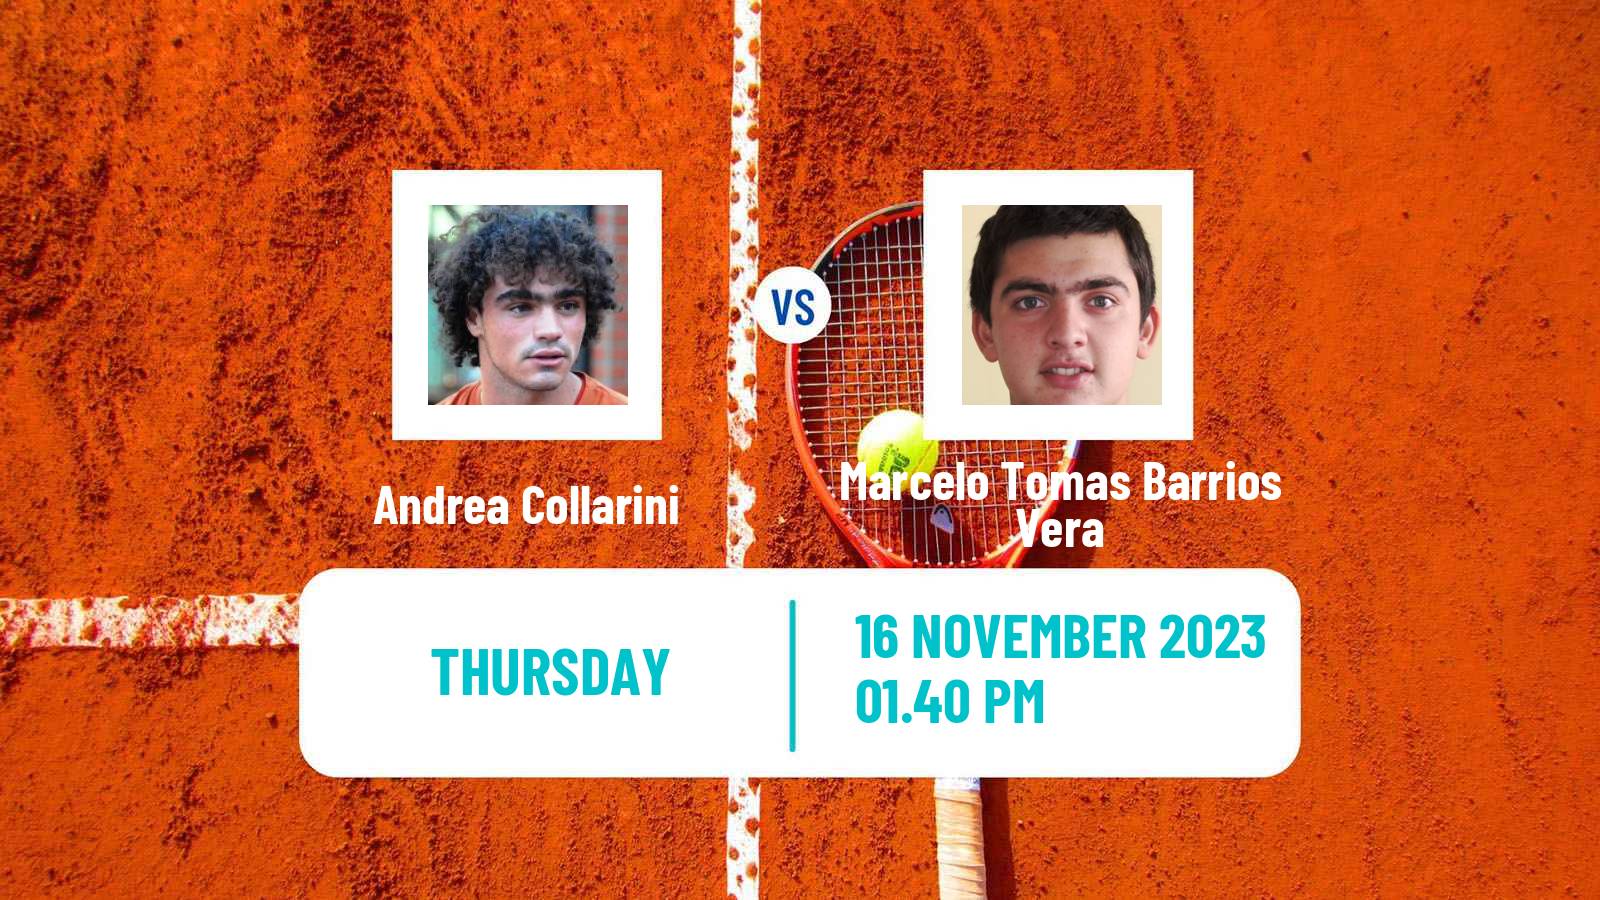 Tennis Montevideo Challenger Men Andrea Collarini - Marcelo Tomas Barrios Vera